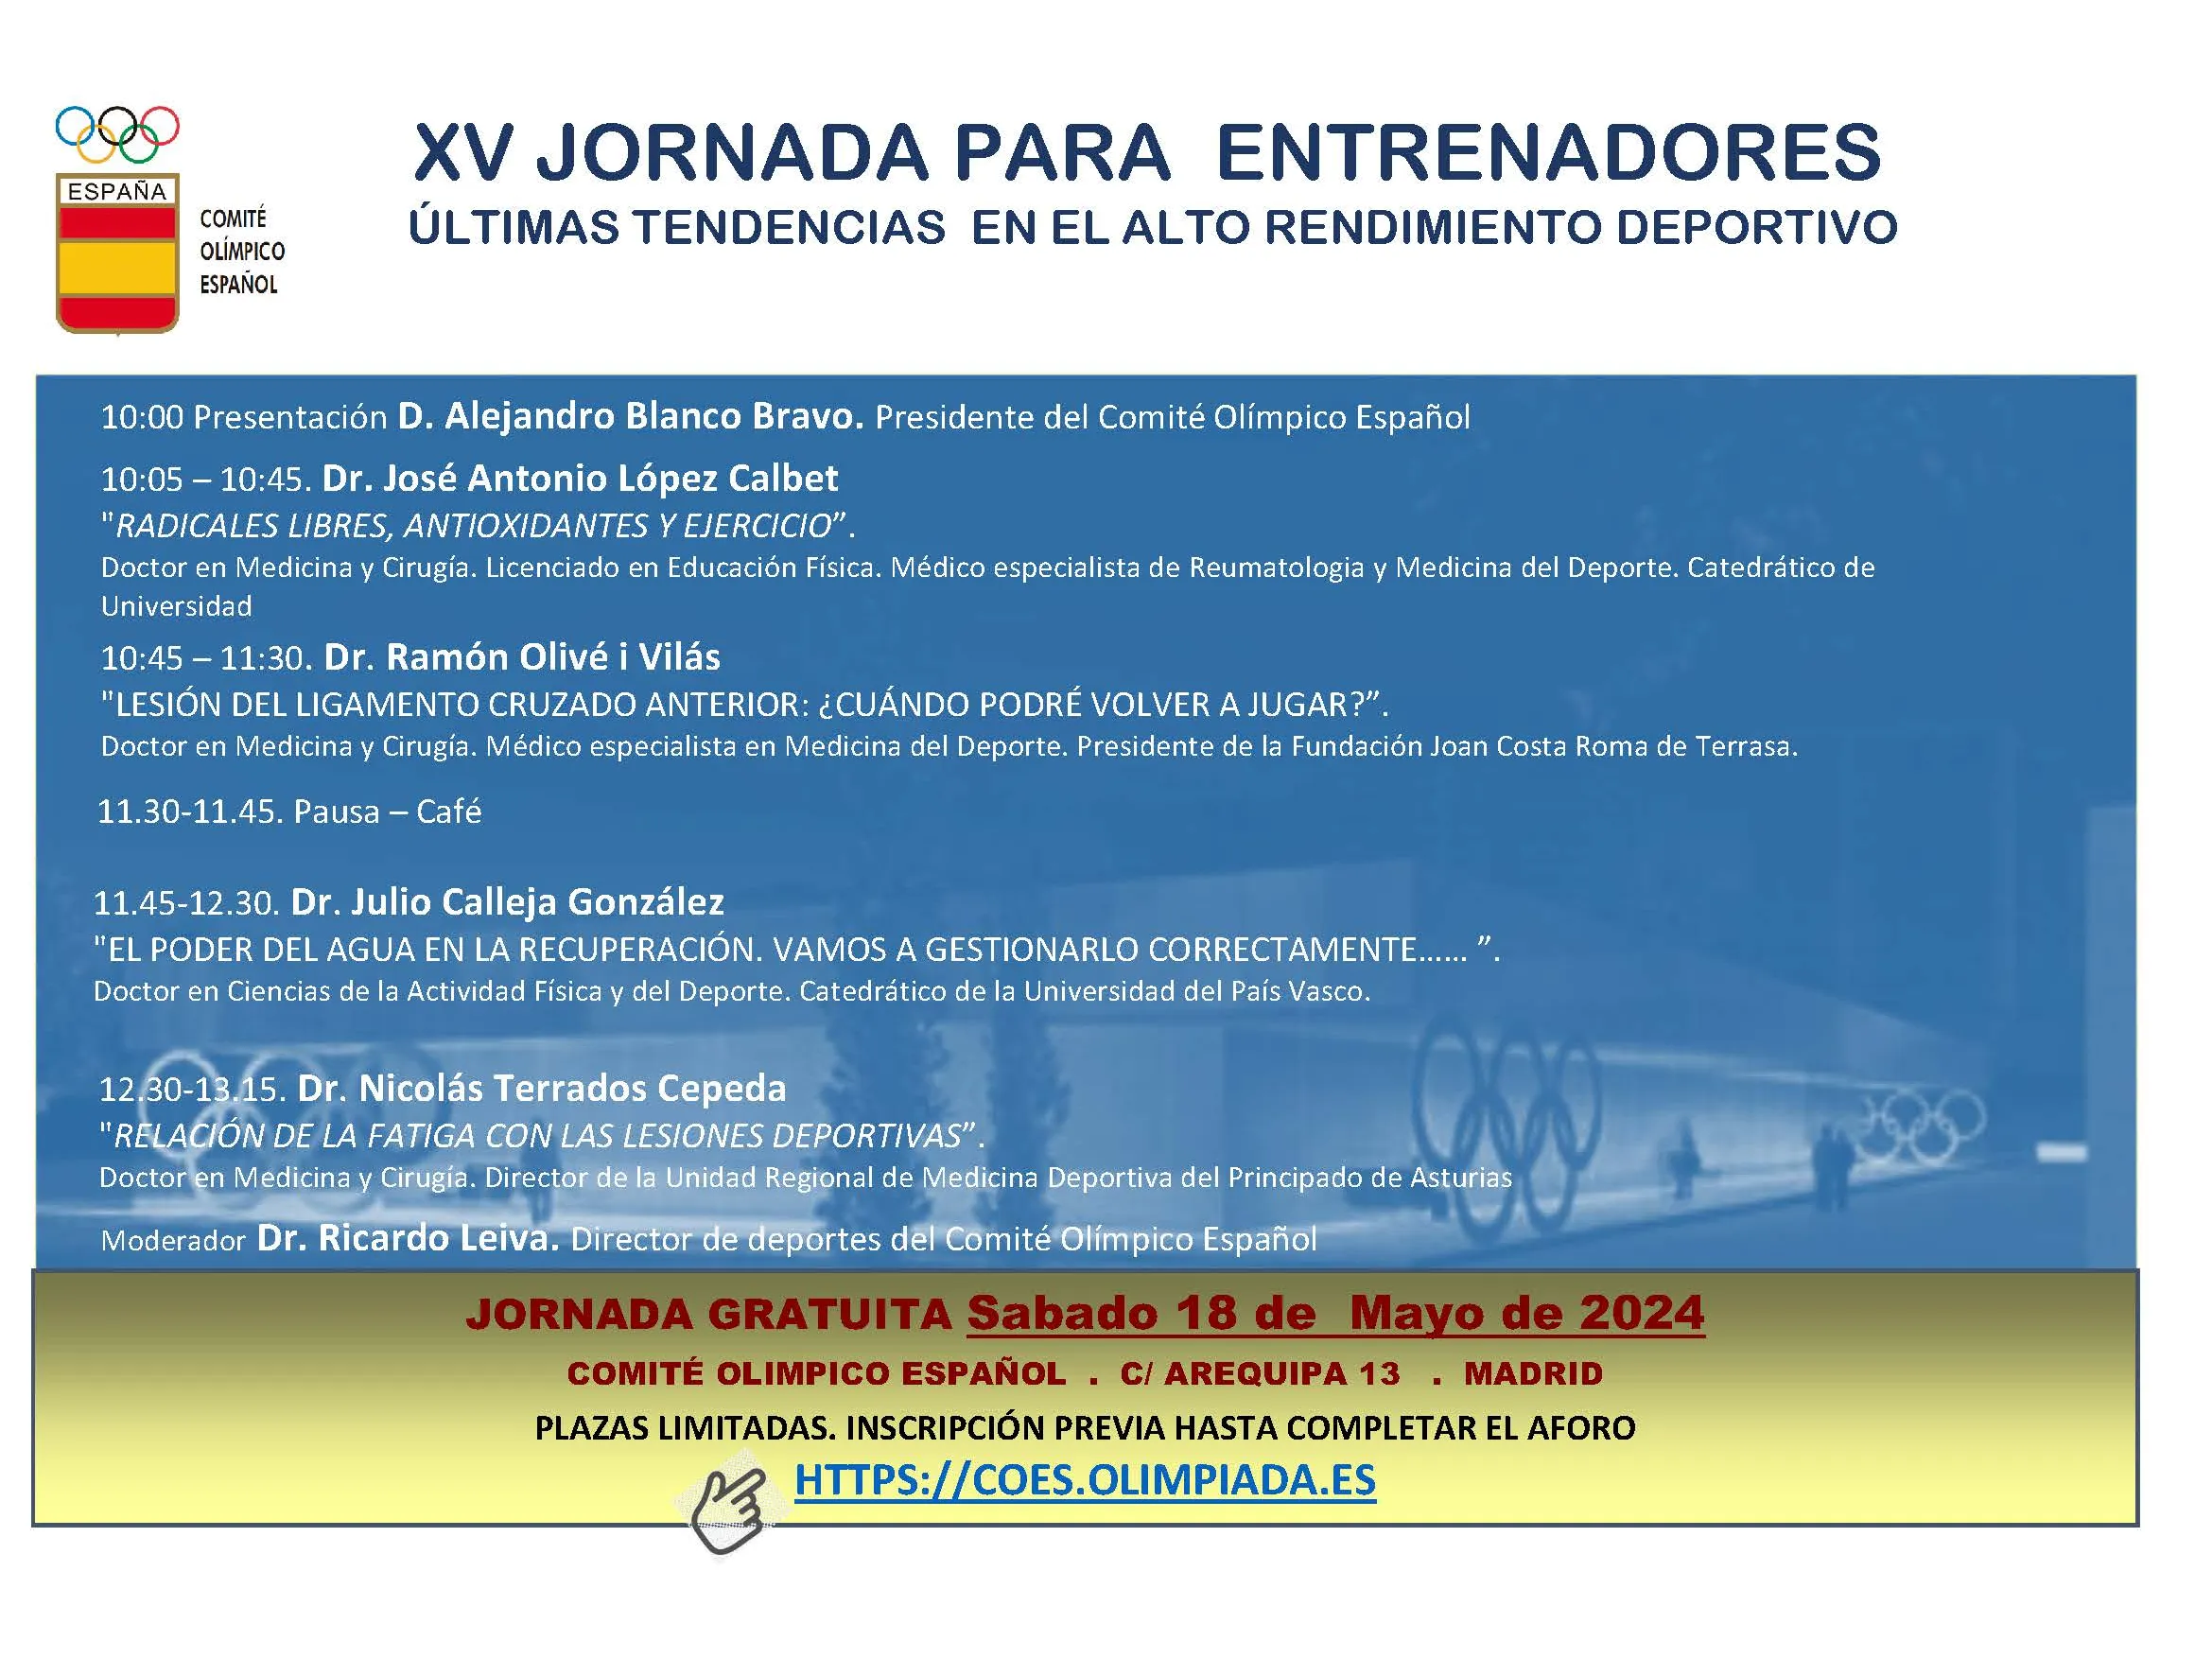 XV Jornada para Entrenadores COE (18 de mayo)